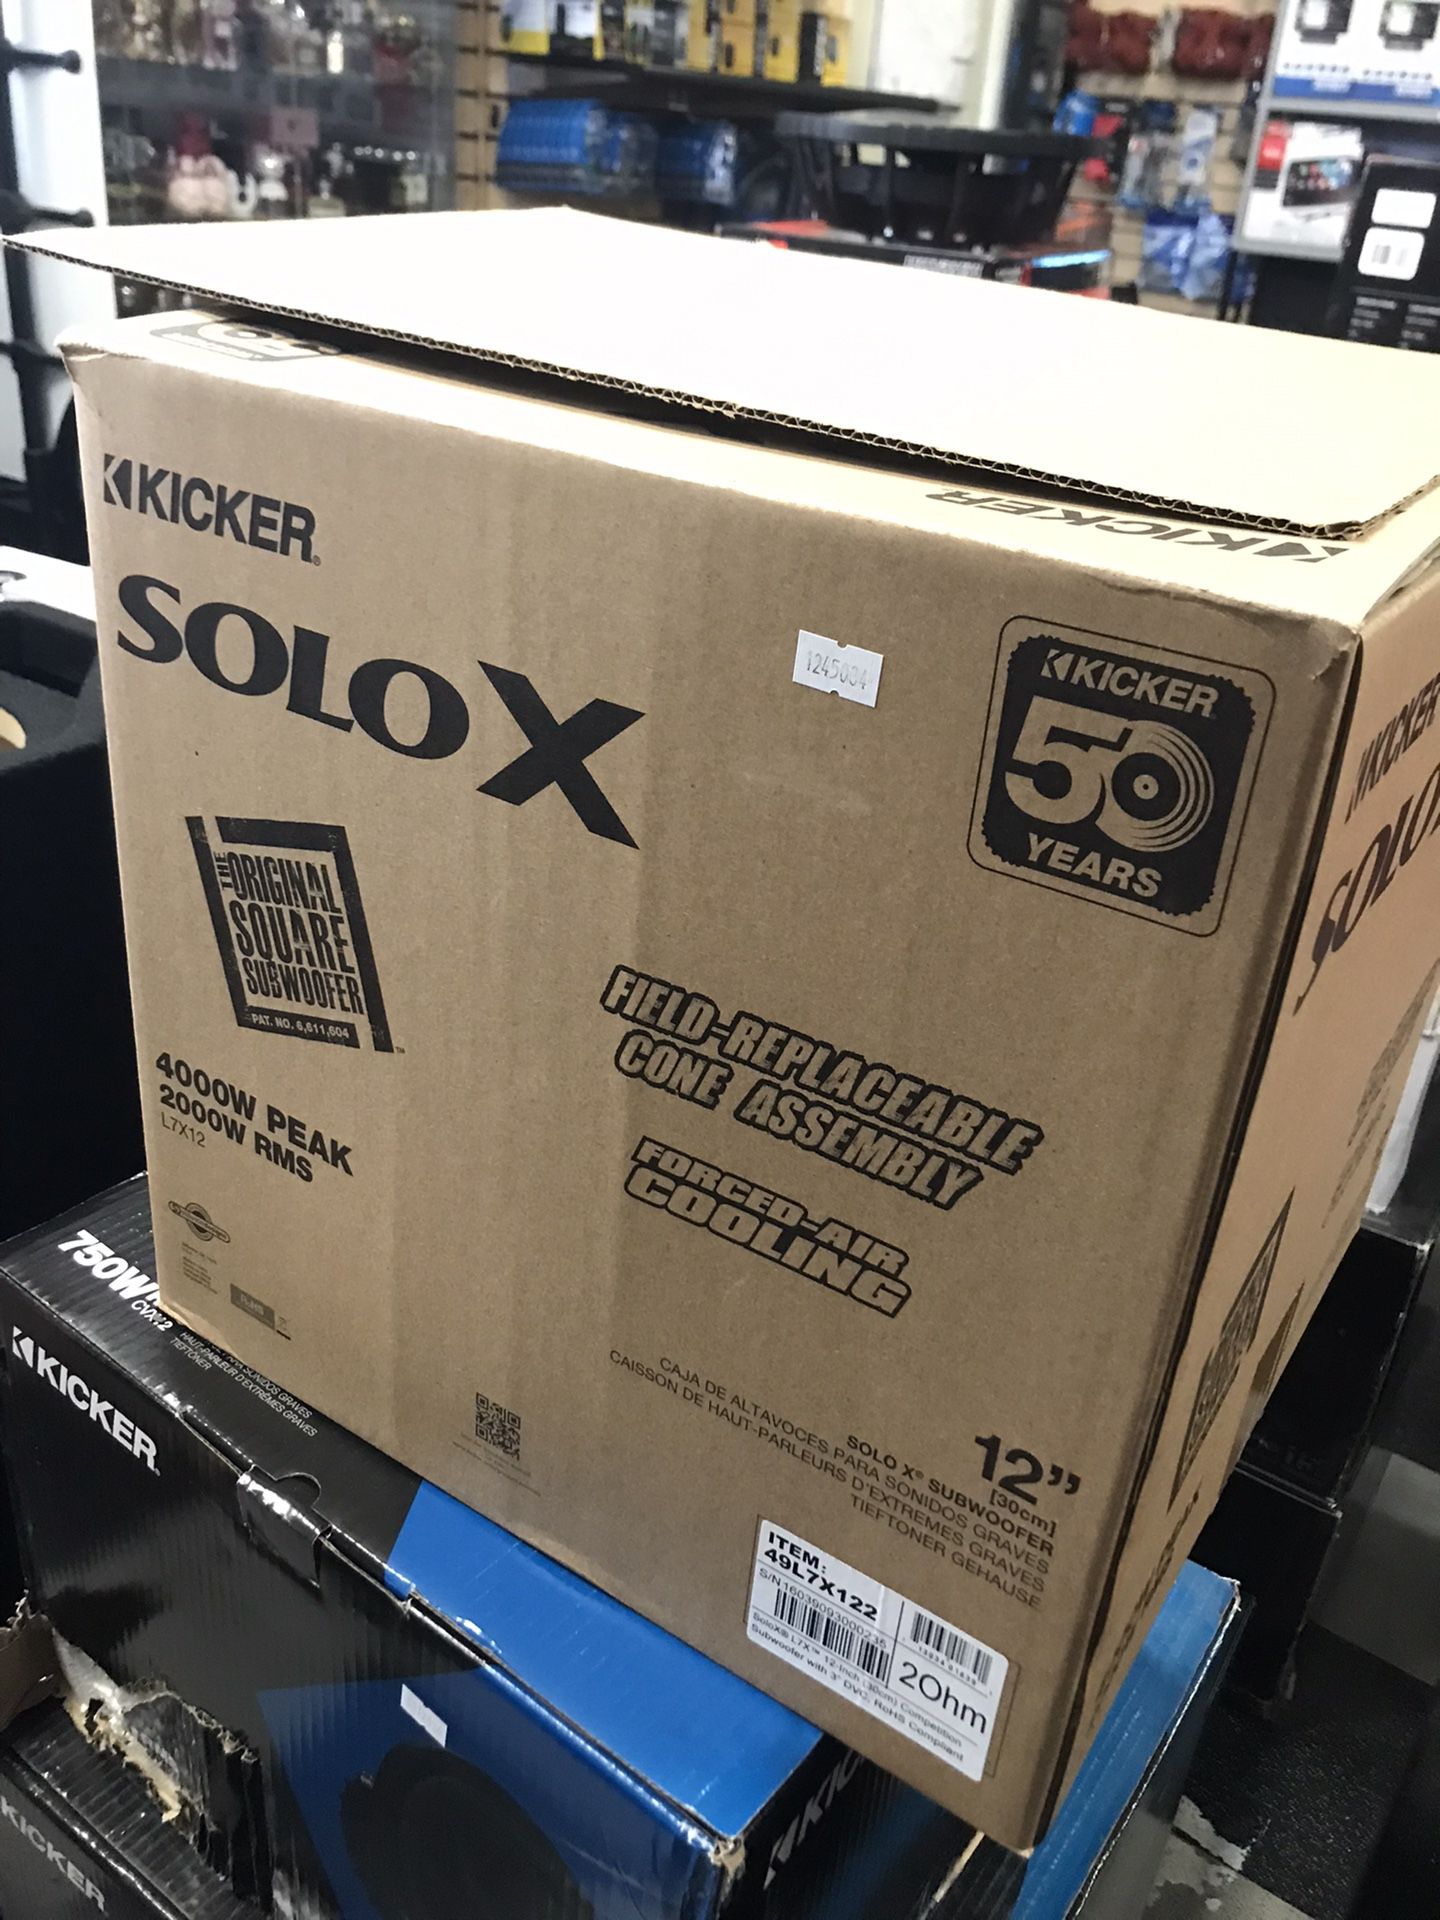 Kicker L7 SoloX 12 On Sale For 629.99